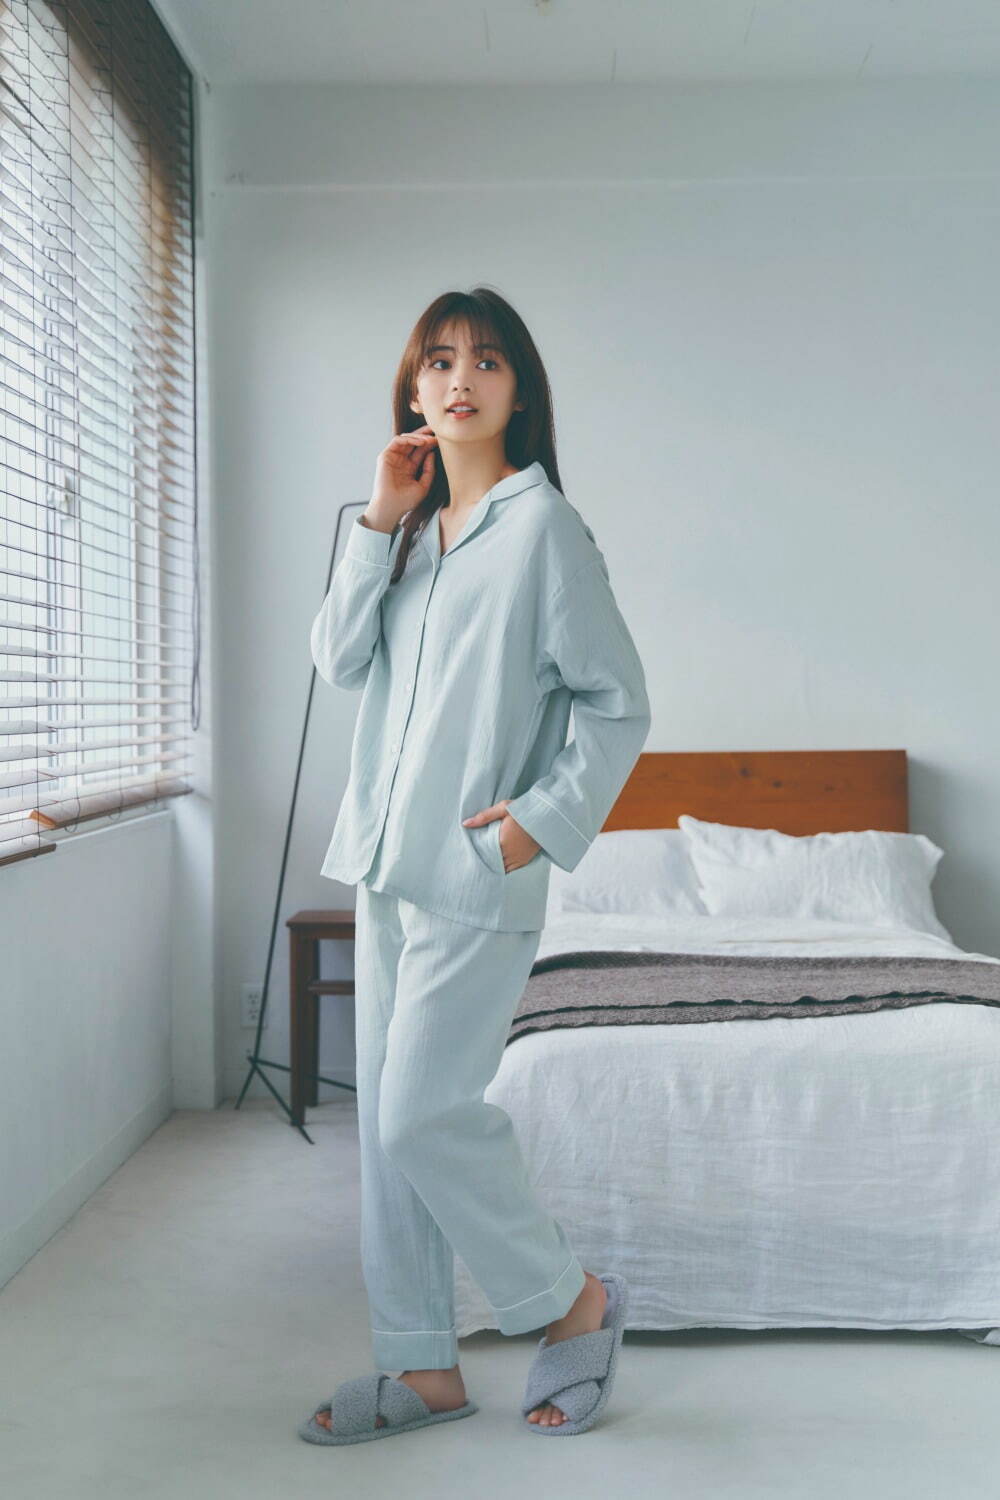 Gu 22春のレディースパジャマ 睡眠のスペシャリスト監修 快眠にこだわる パジャマ ワンピース ファッションプレス